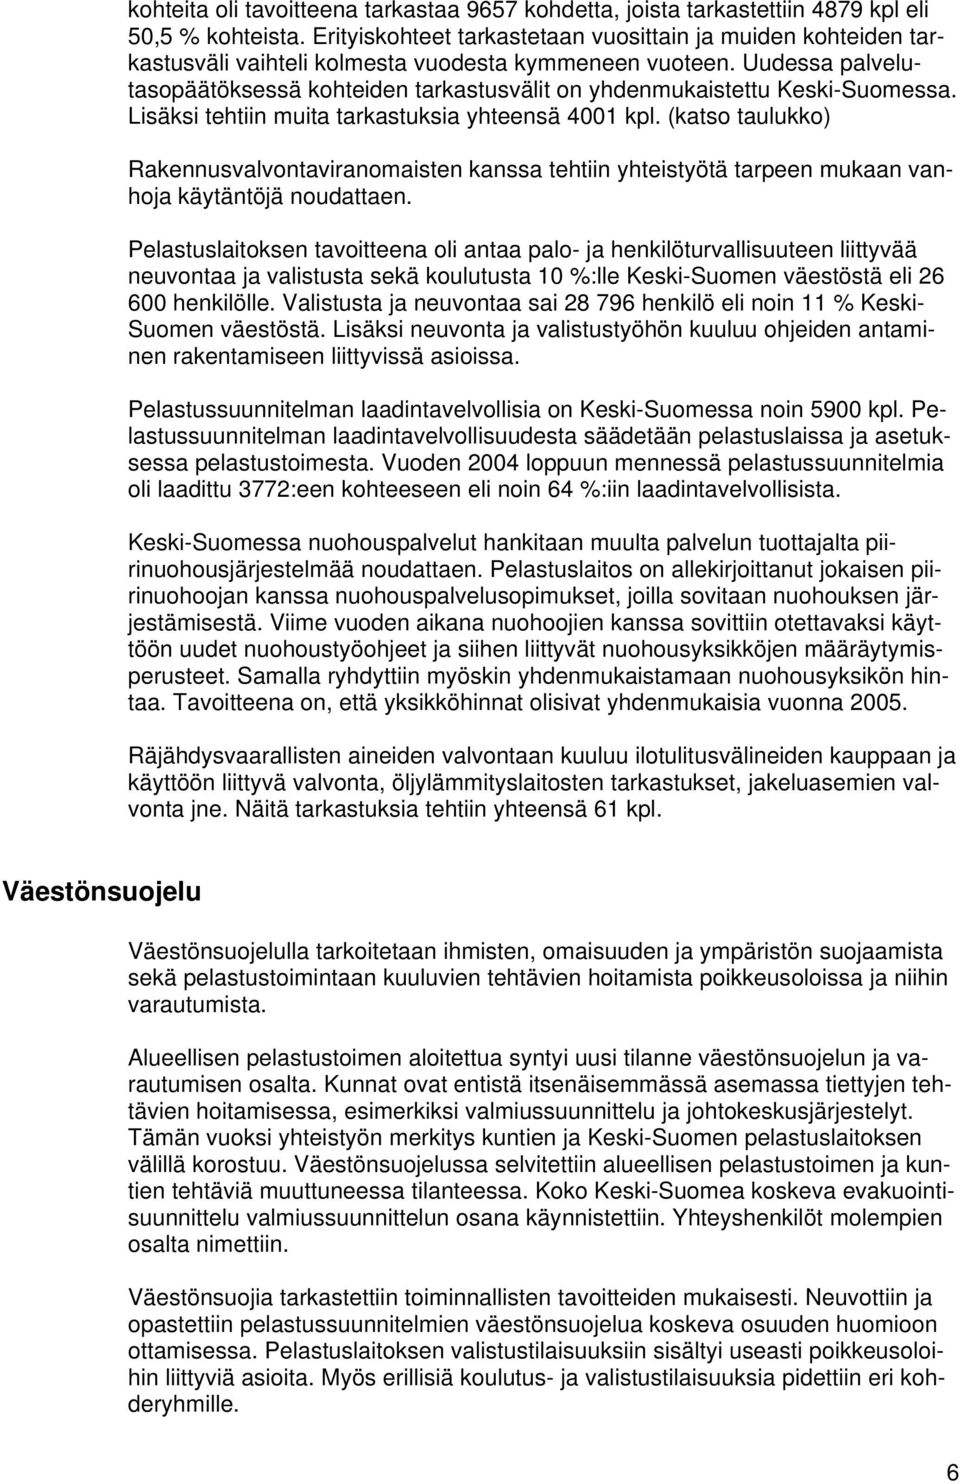 Uudessa palvelutasopäätöksessä kohteiden tarkastusvälit on yhdenmukaistettu Keski-Suomessa. Lisäksi tehtiin muita tarkastuksia yhteensä 4001 kpl.